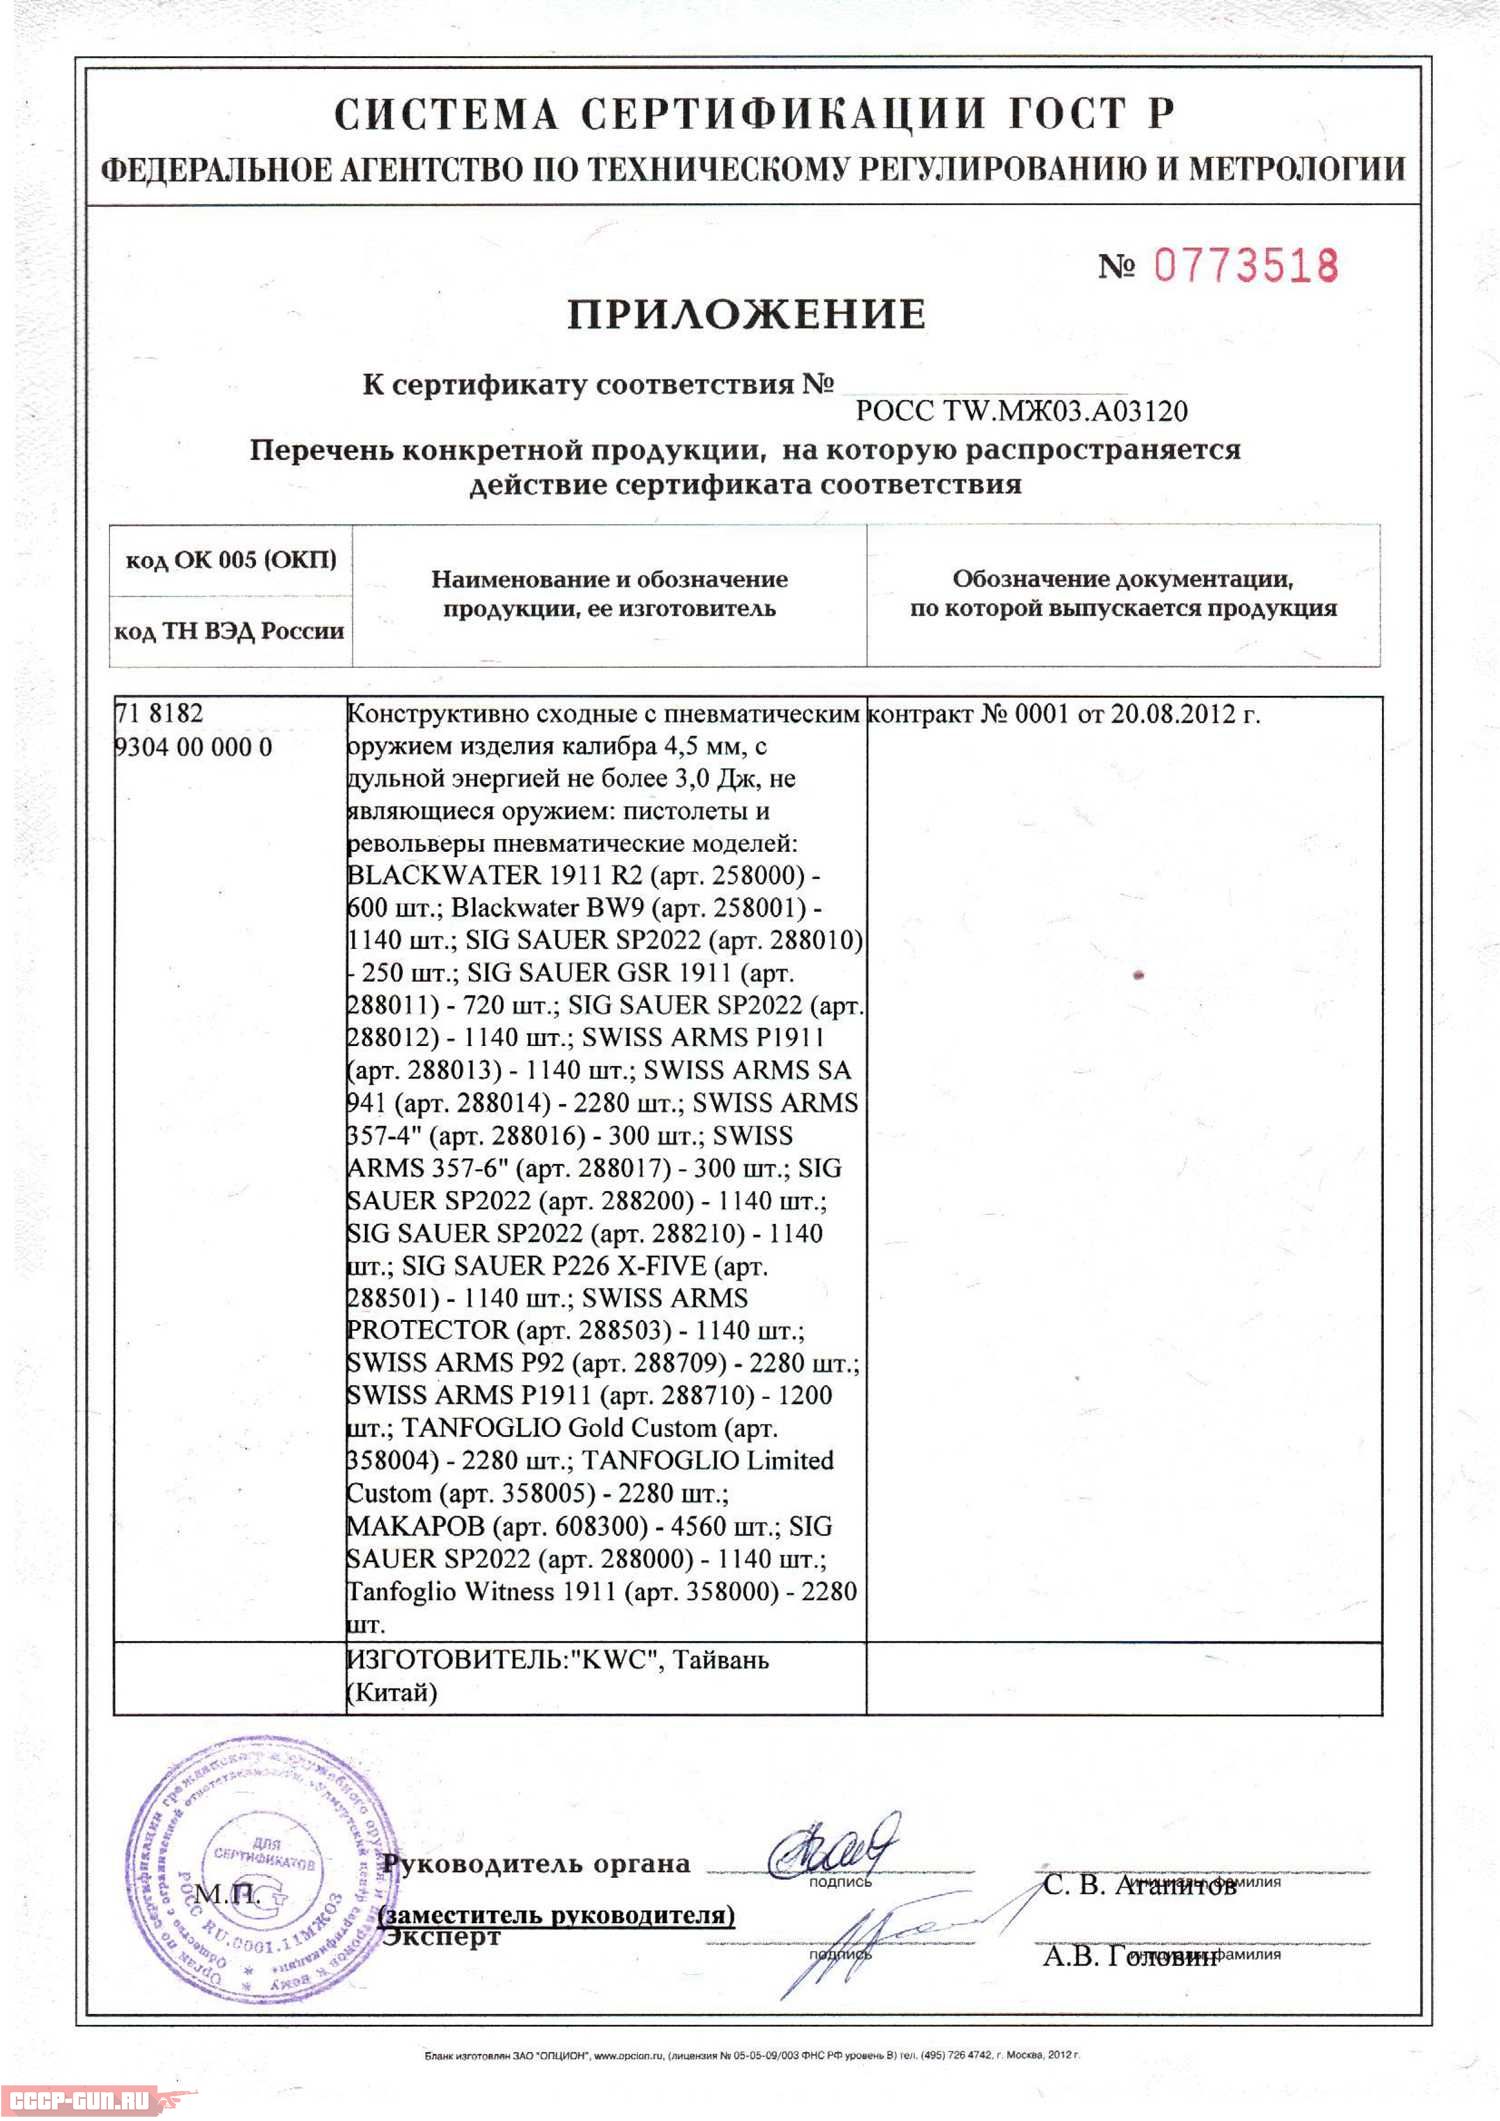 Сертификат на пневматический пистолет Cybergun Sig Sauer SP 2022 (Никель, металл) скачать